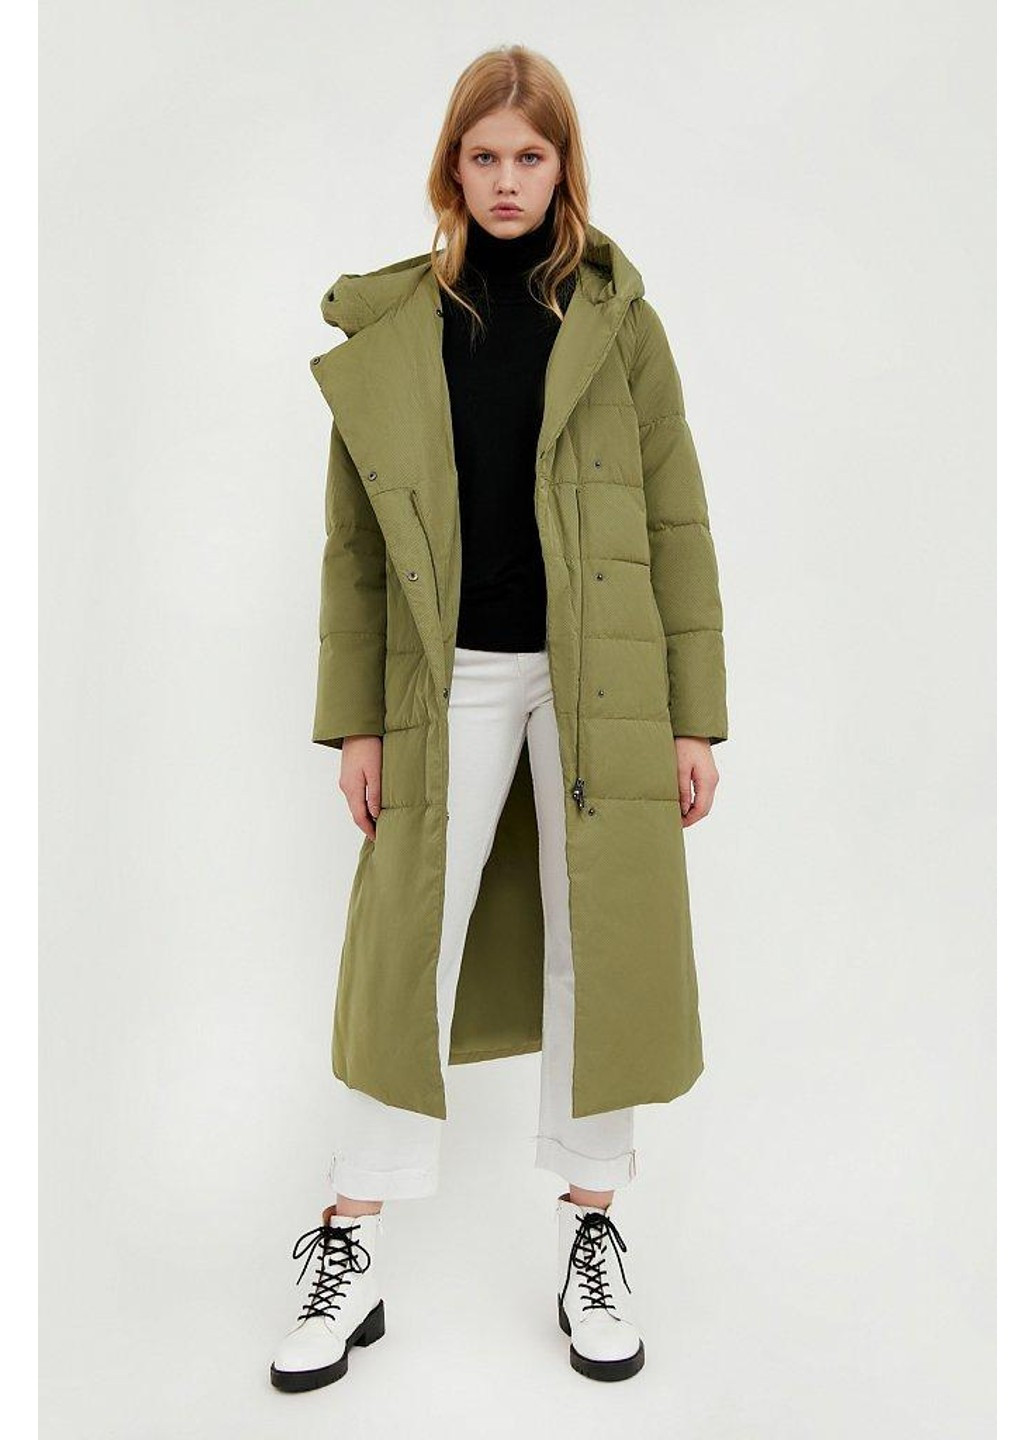 Зеленая зимняя зимнее пальто a20-11001-525 Finn Flare